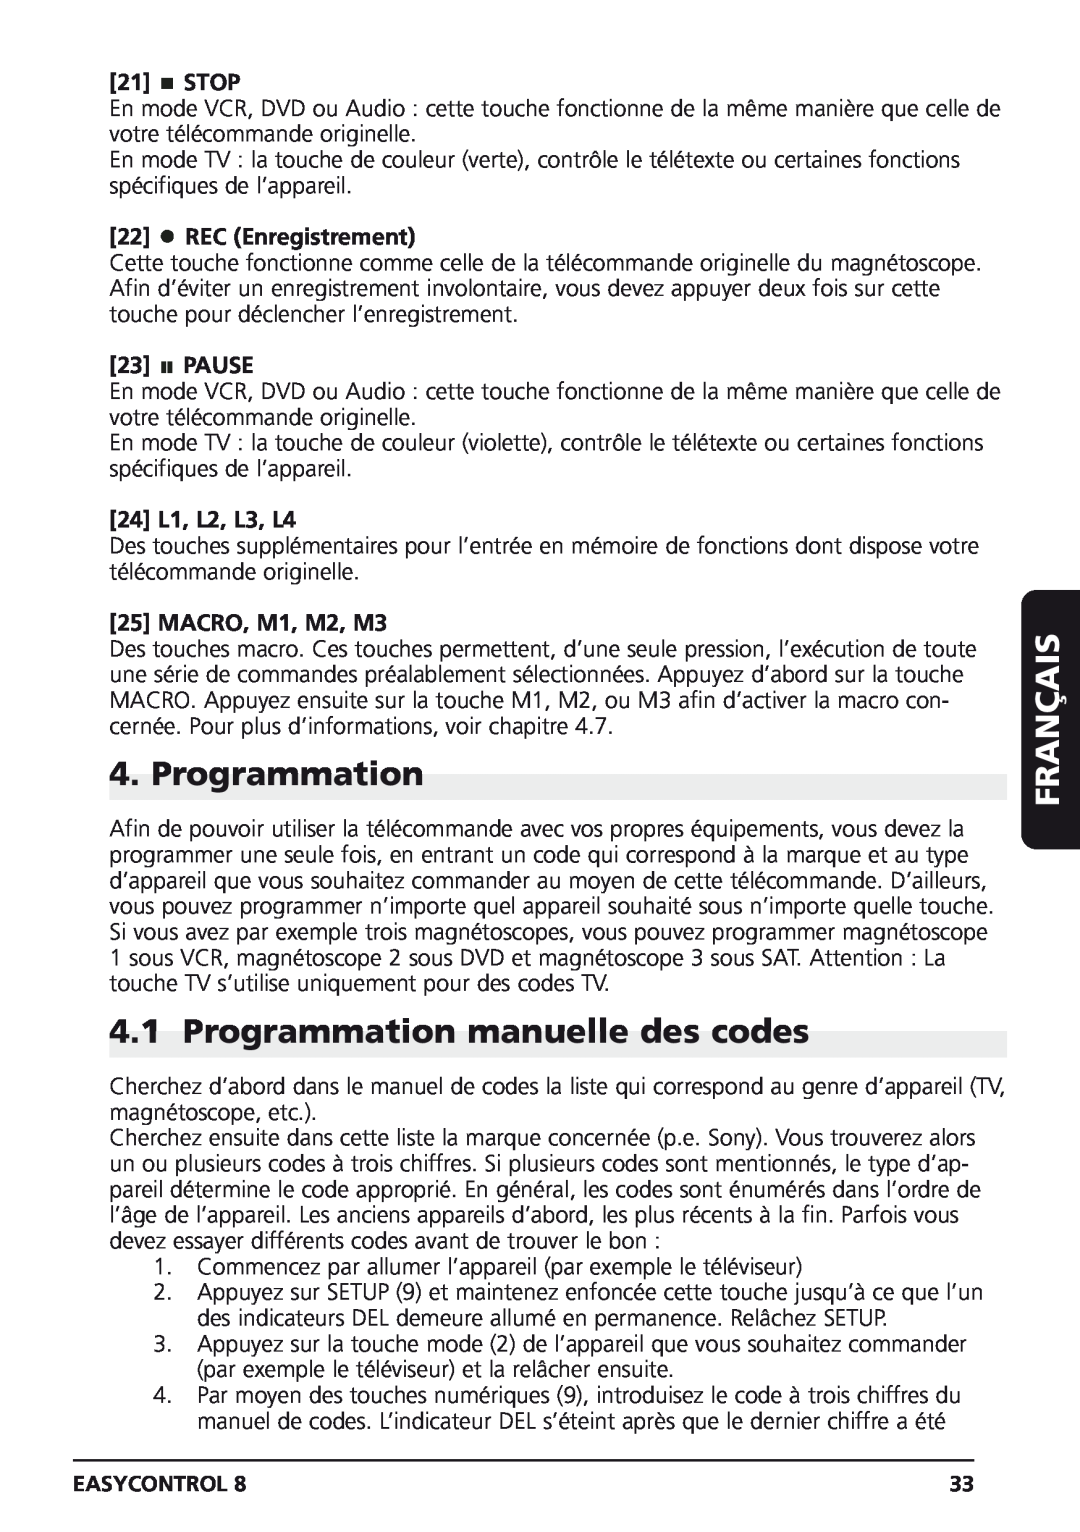 Marmitek Easycontrol 8 Programmation manuelle des codes, REC Enregistrement, Français, Stop, Pause, 24 L1, L2, L3, L4 